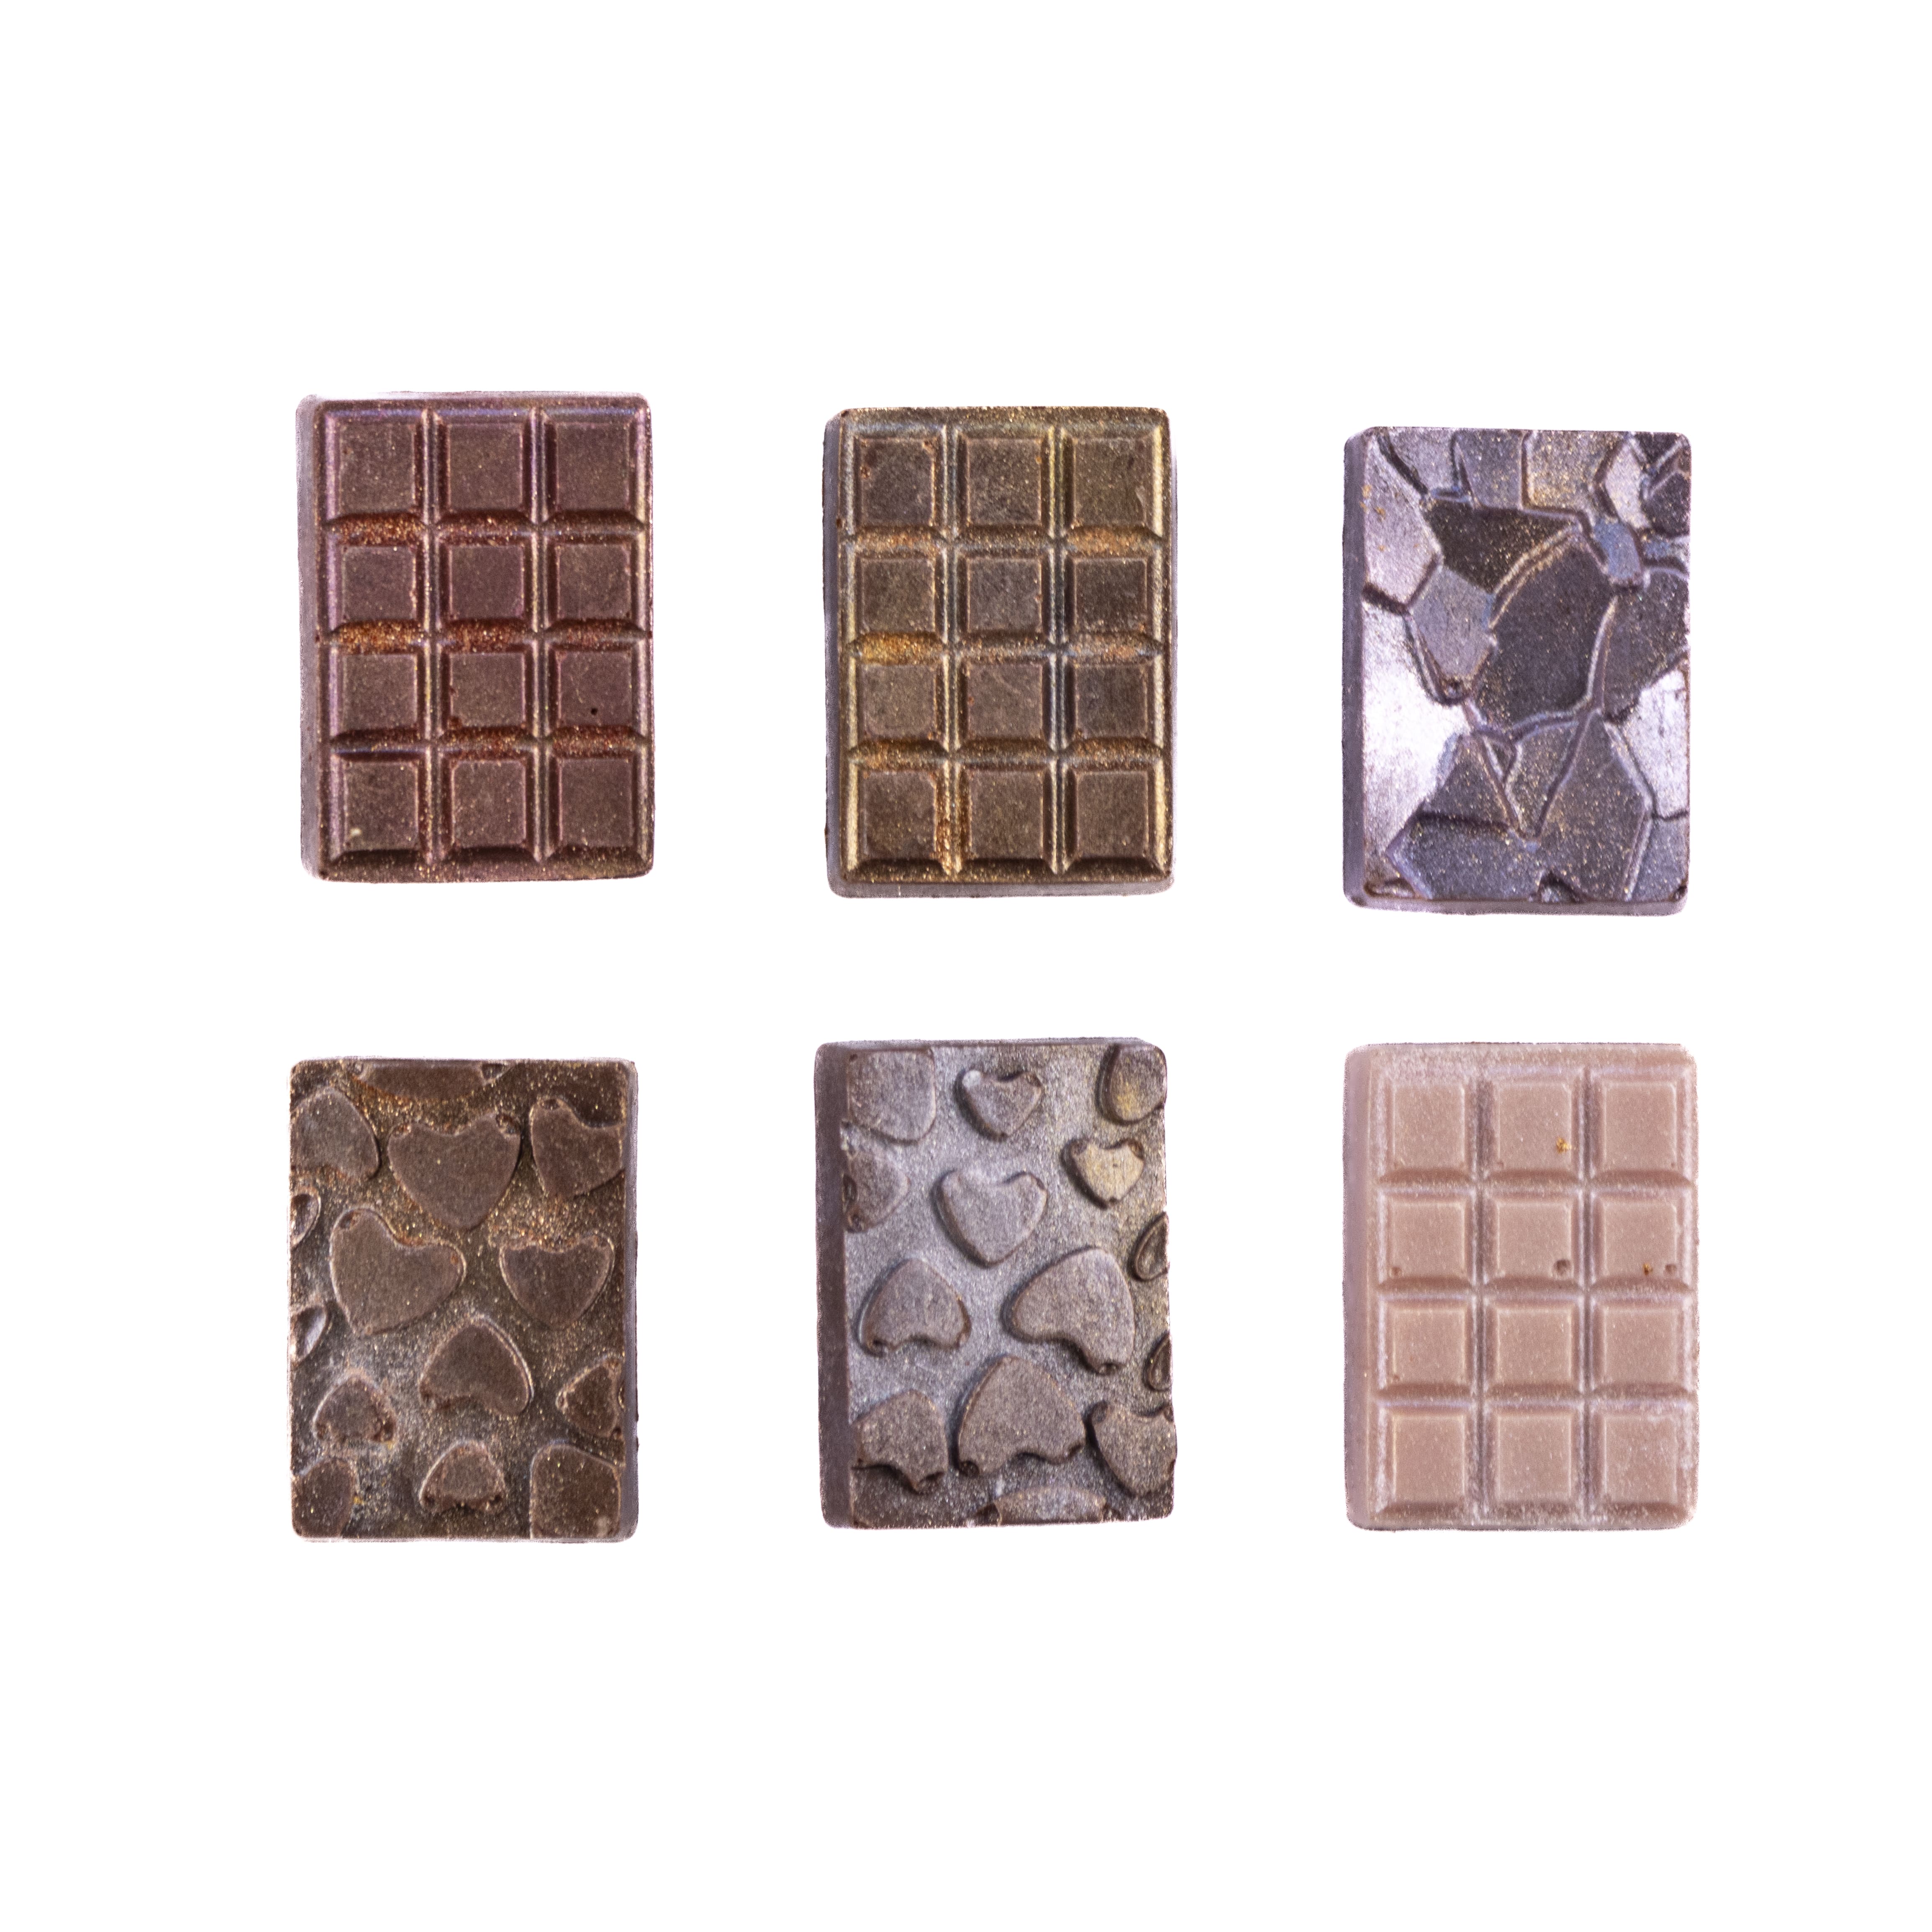 Sjokoladeplate 19 | Kjøbmandsgaarden Chocolate